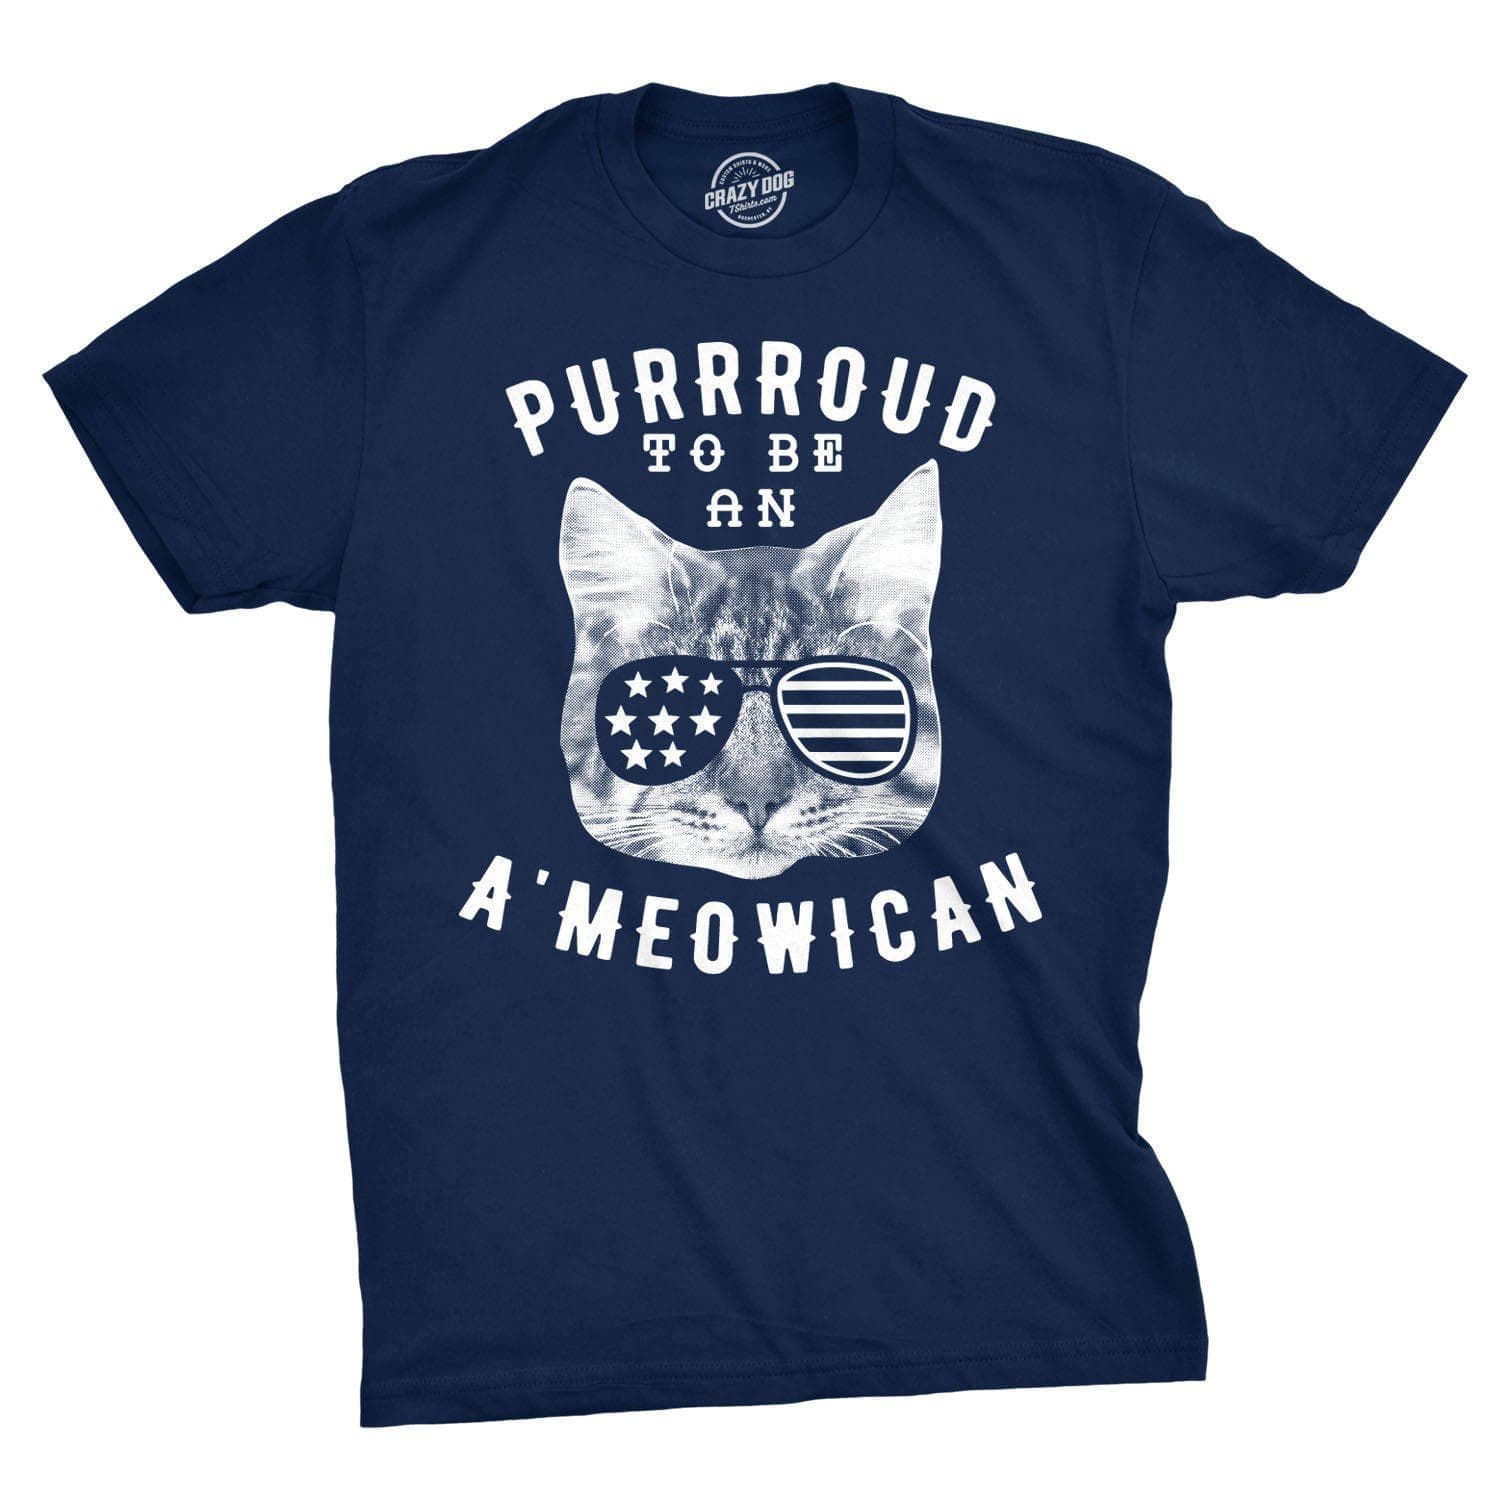 Purrroud To Be An Ameowican Men's Tshirt  -  Crazy Dog T-Shirts